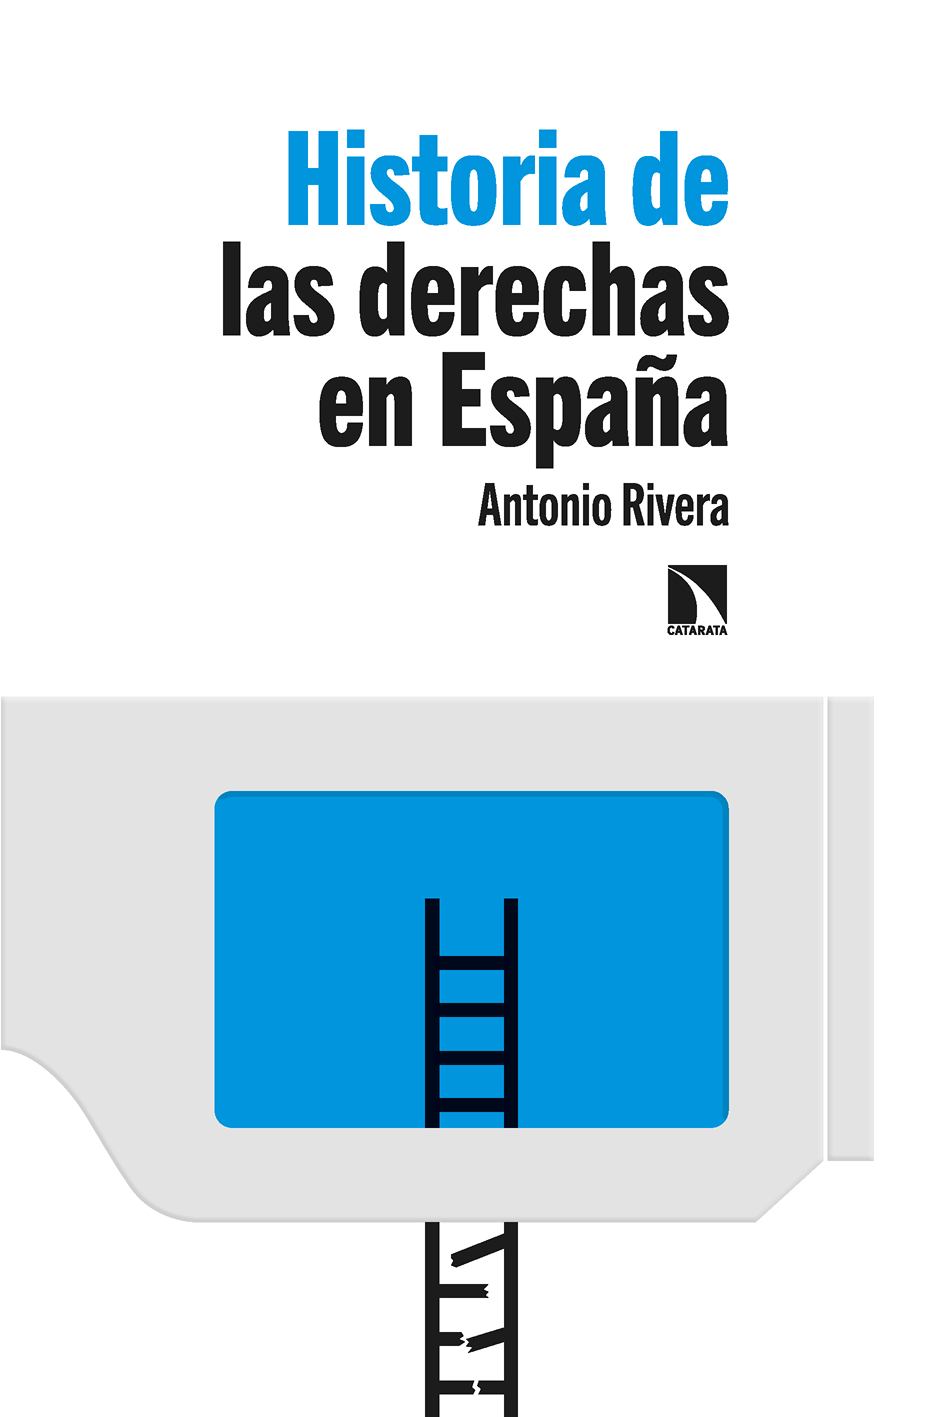 Historia de las derechas en España - image 2